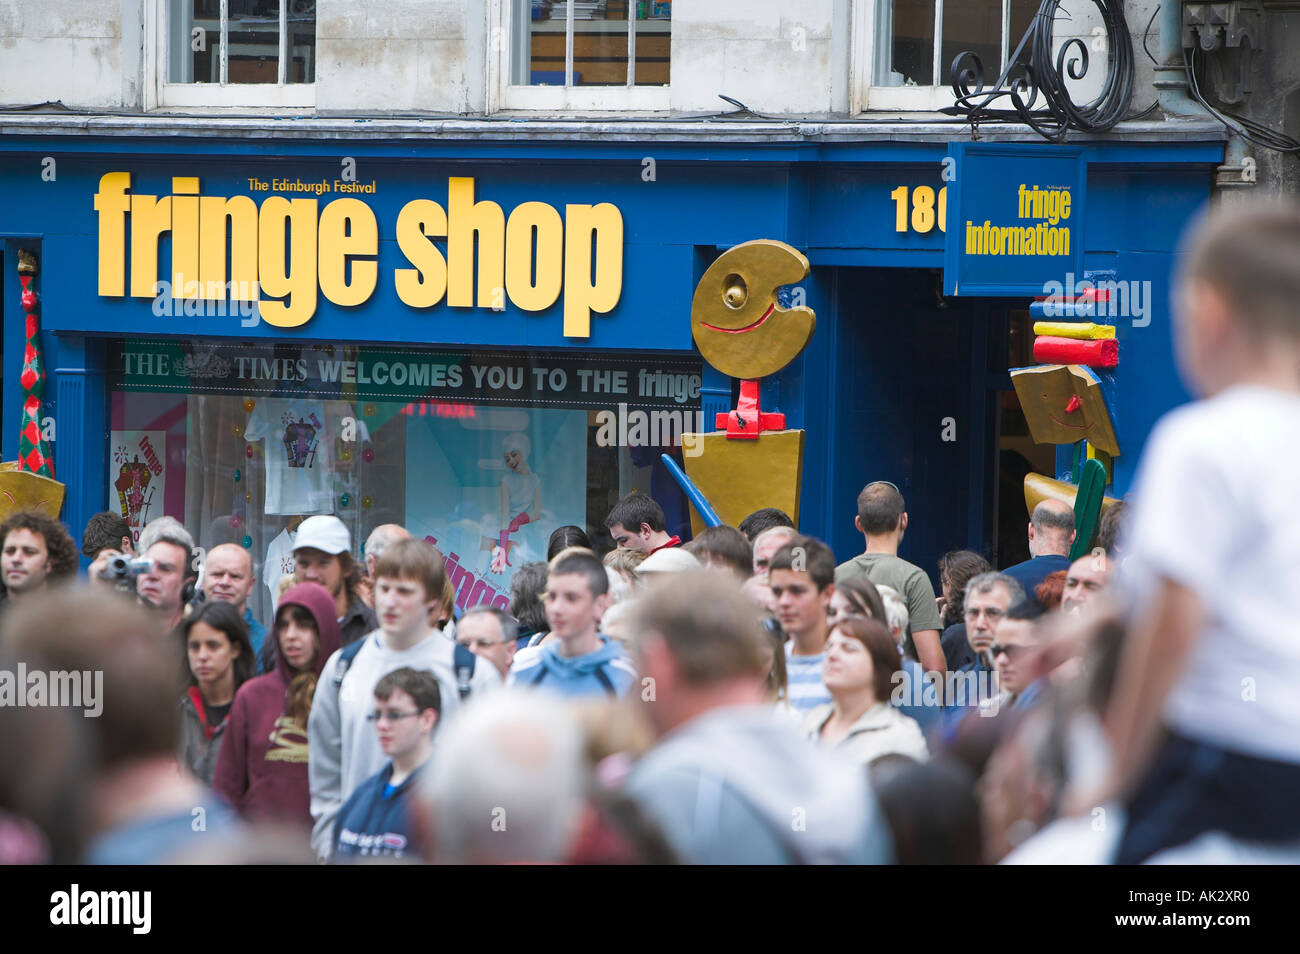 Die Fringe-Shop in der Royal Mile, Edinburgh, Schottland Stockfoto